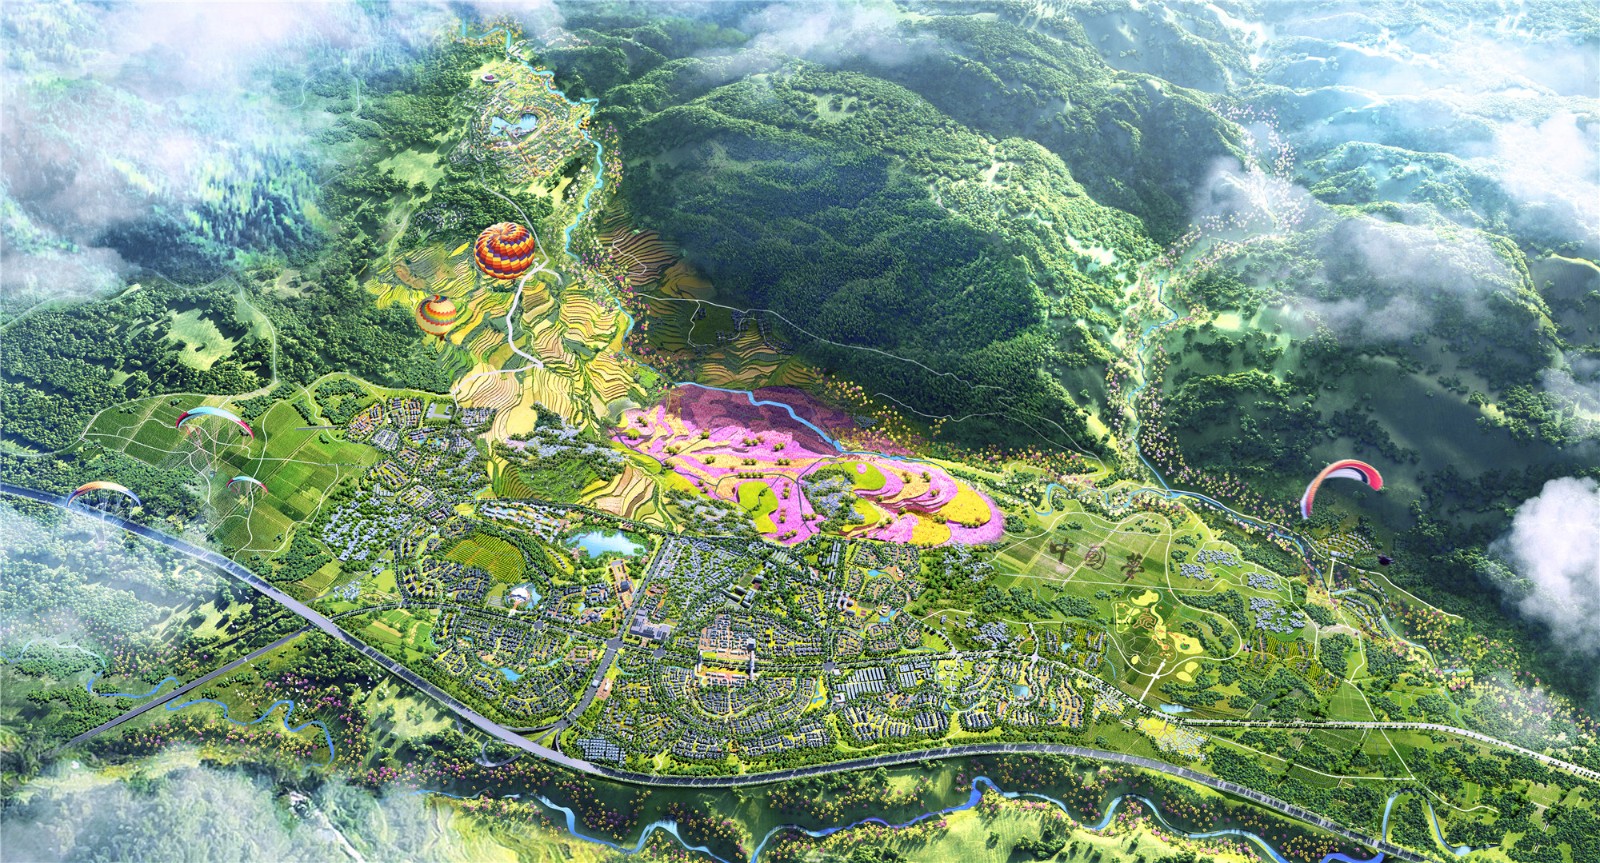 江西省定南县城市总体规划（2009-2030）--功能结构规划图 | 定南县信息公开